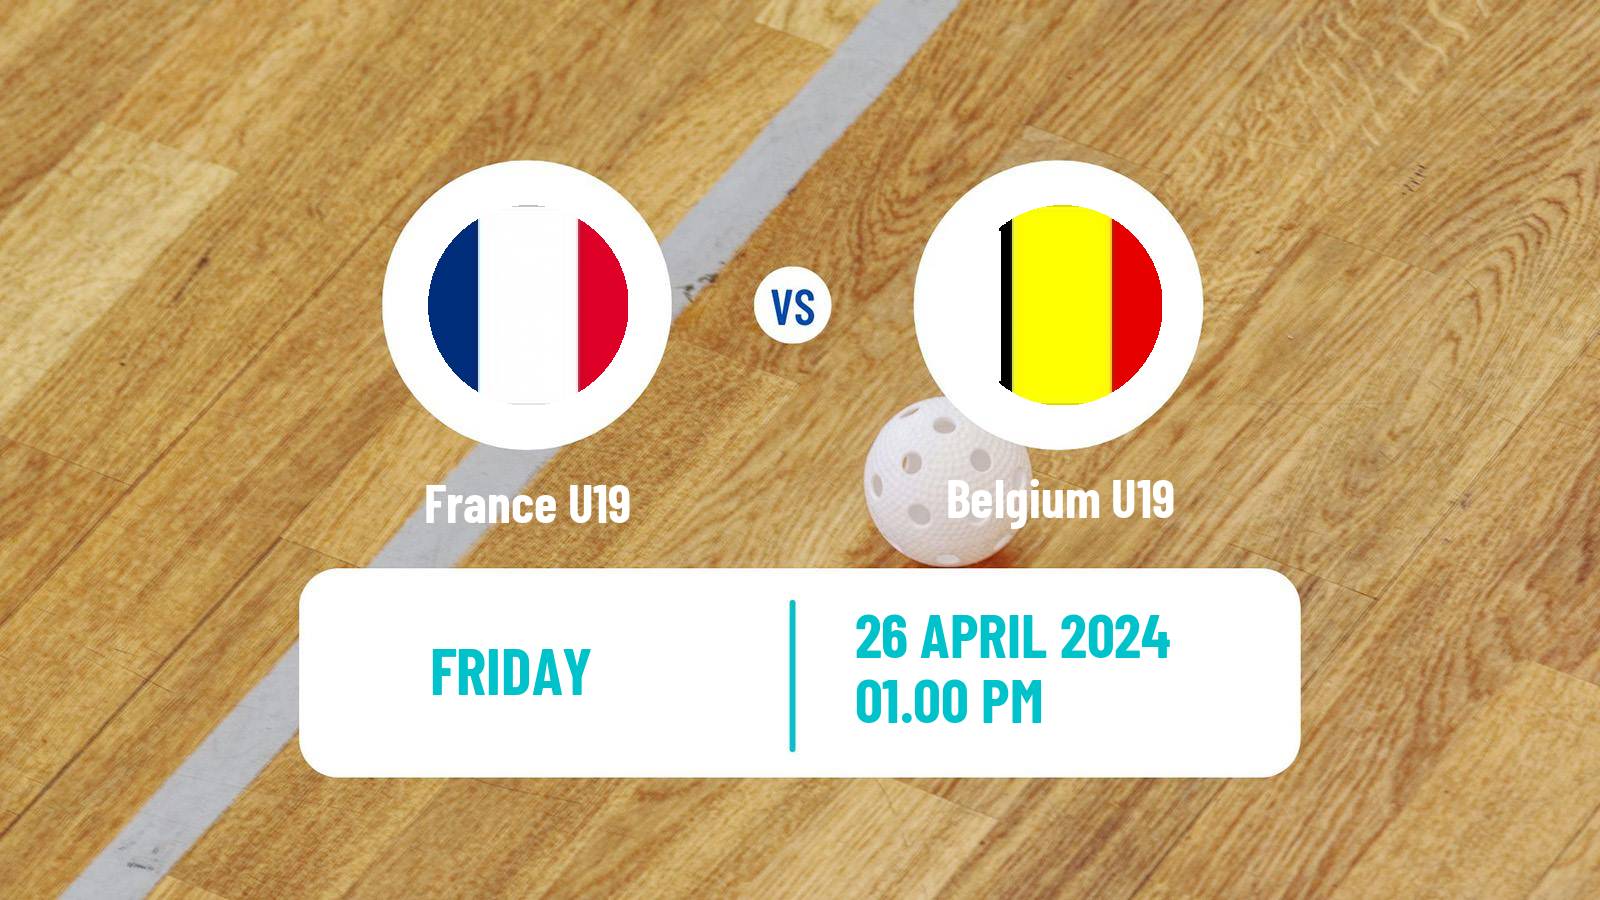 Floorball Friendly International Floorball France U19 - Belgium U19